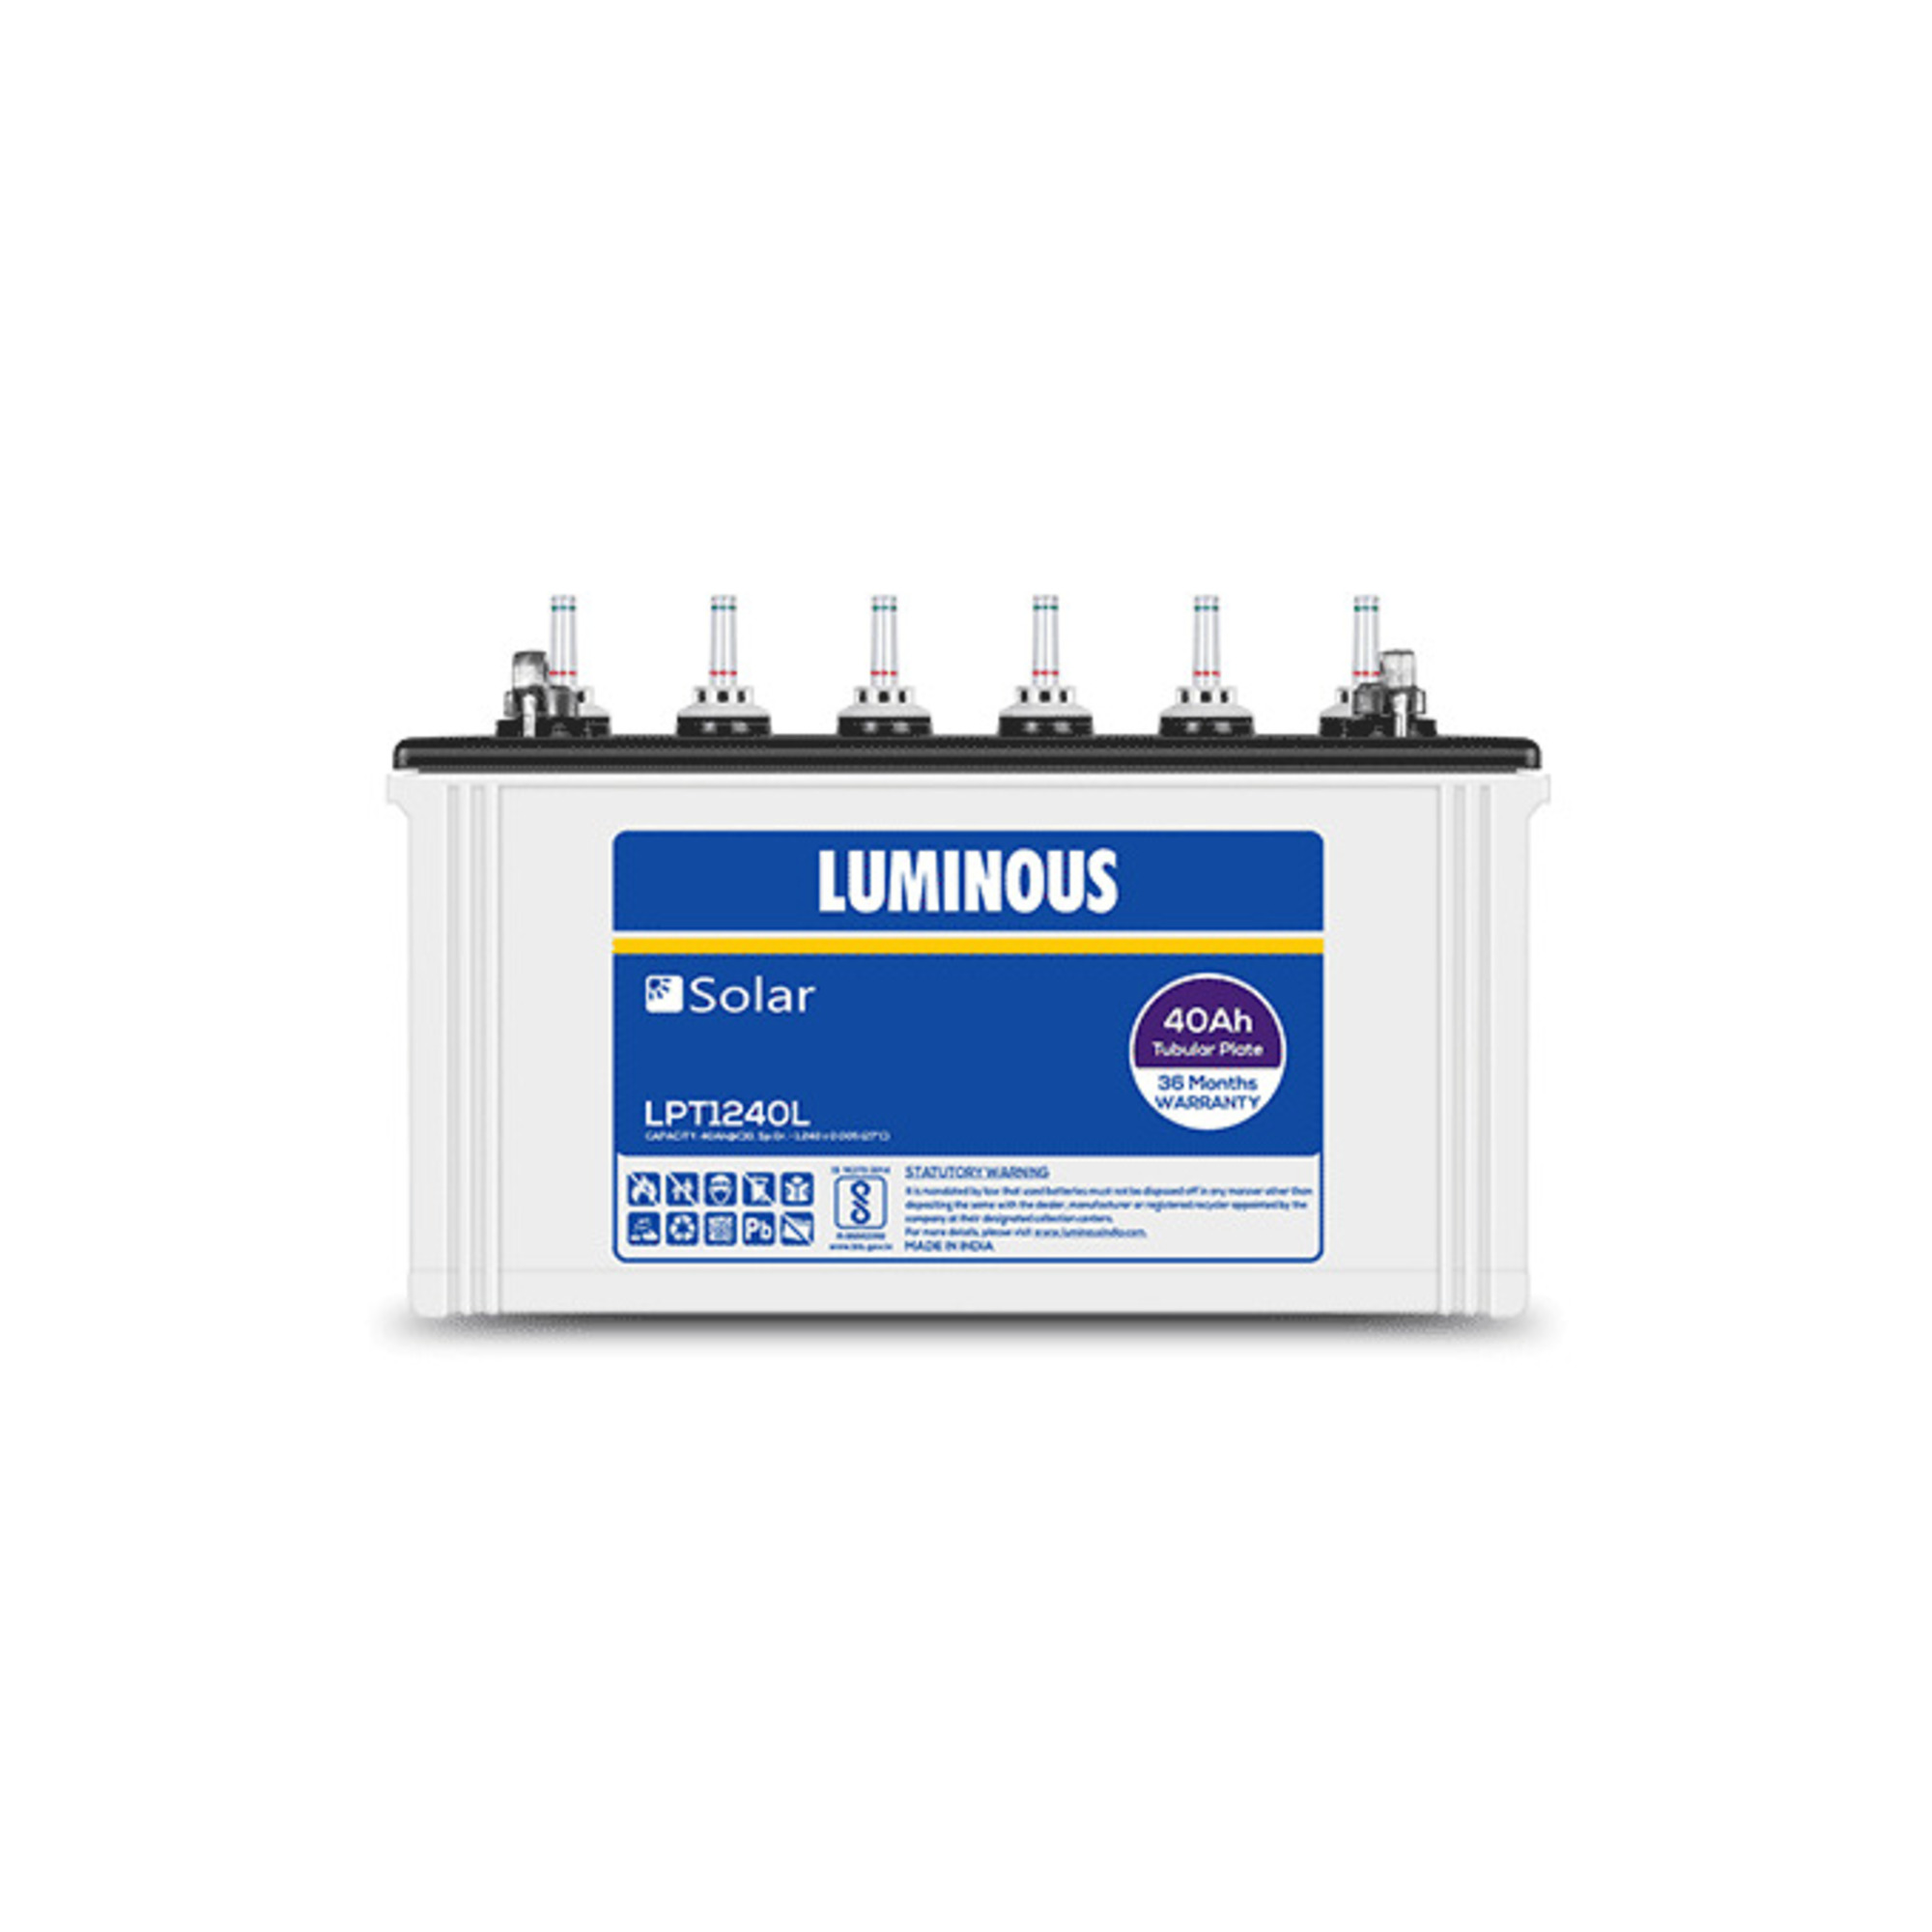 Luminous Solar Battery 40 Ah - LPT1240L